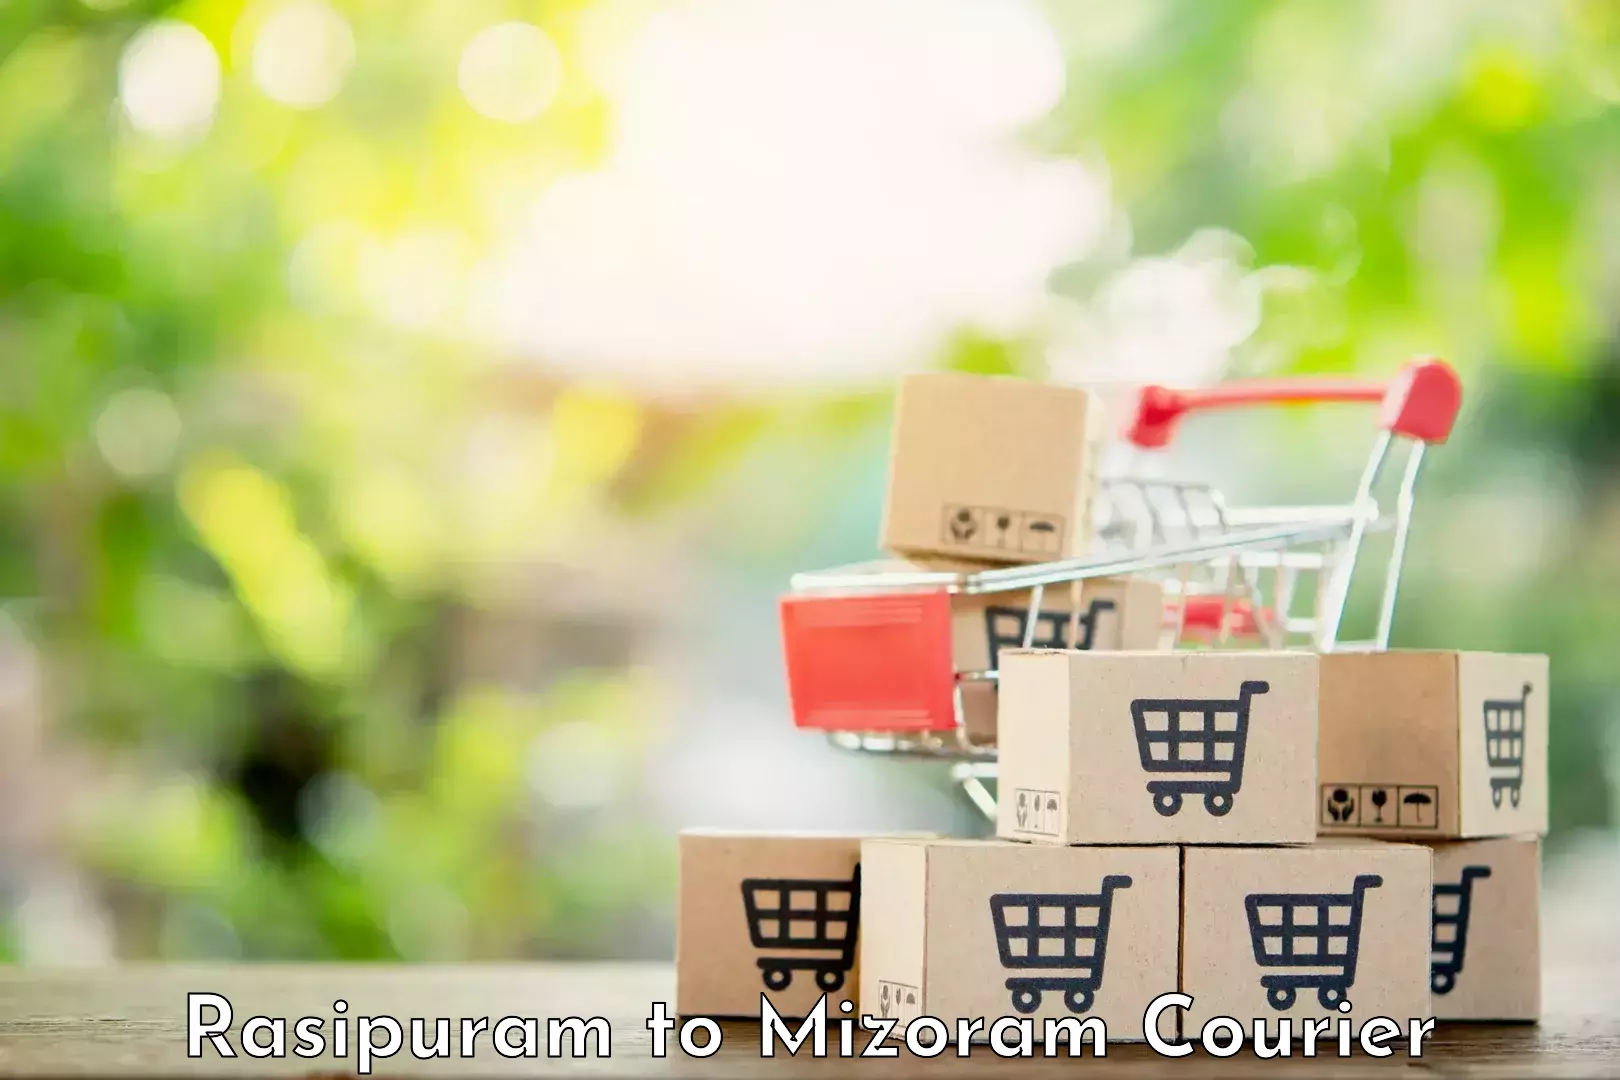 Premium courier solutions Rasipuram to Mizoram